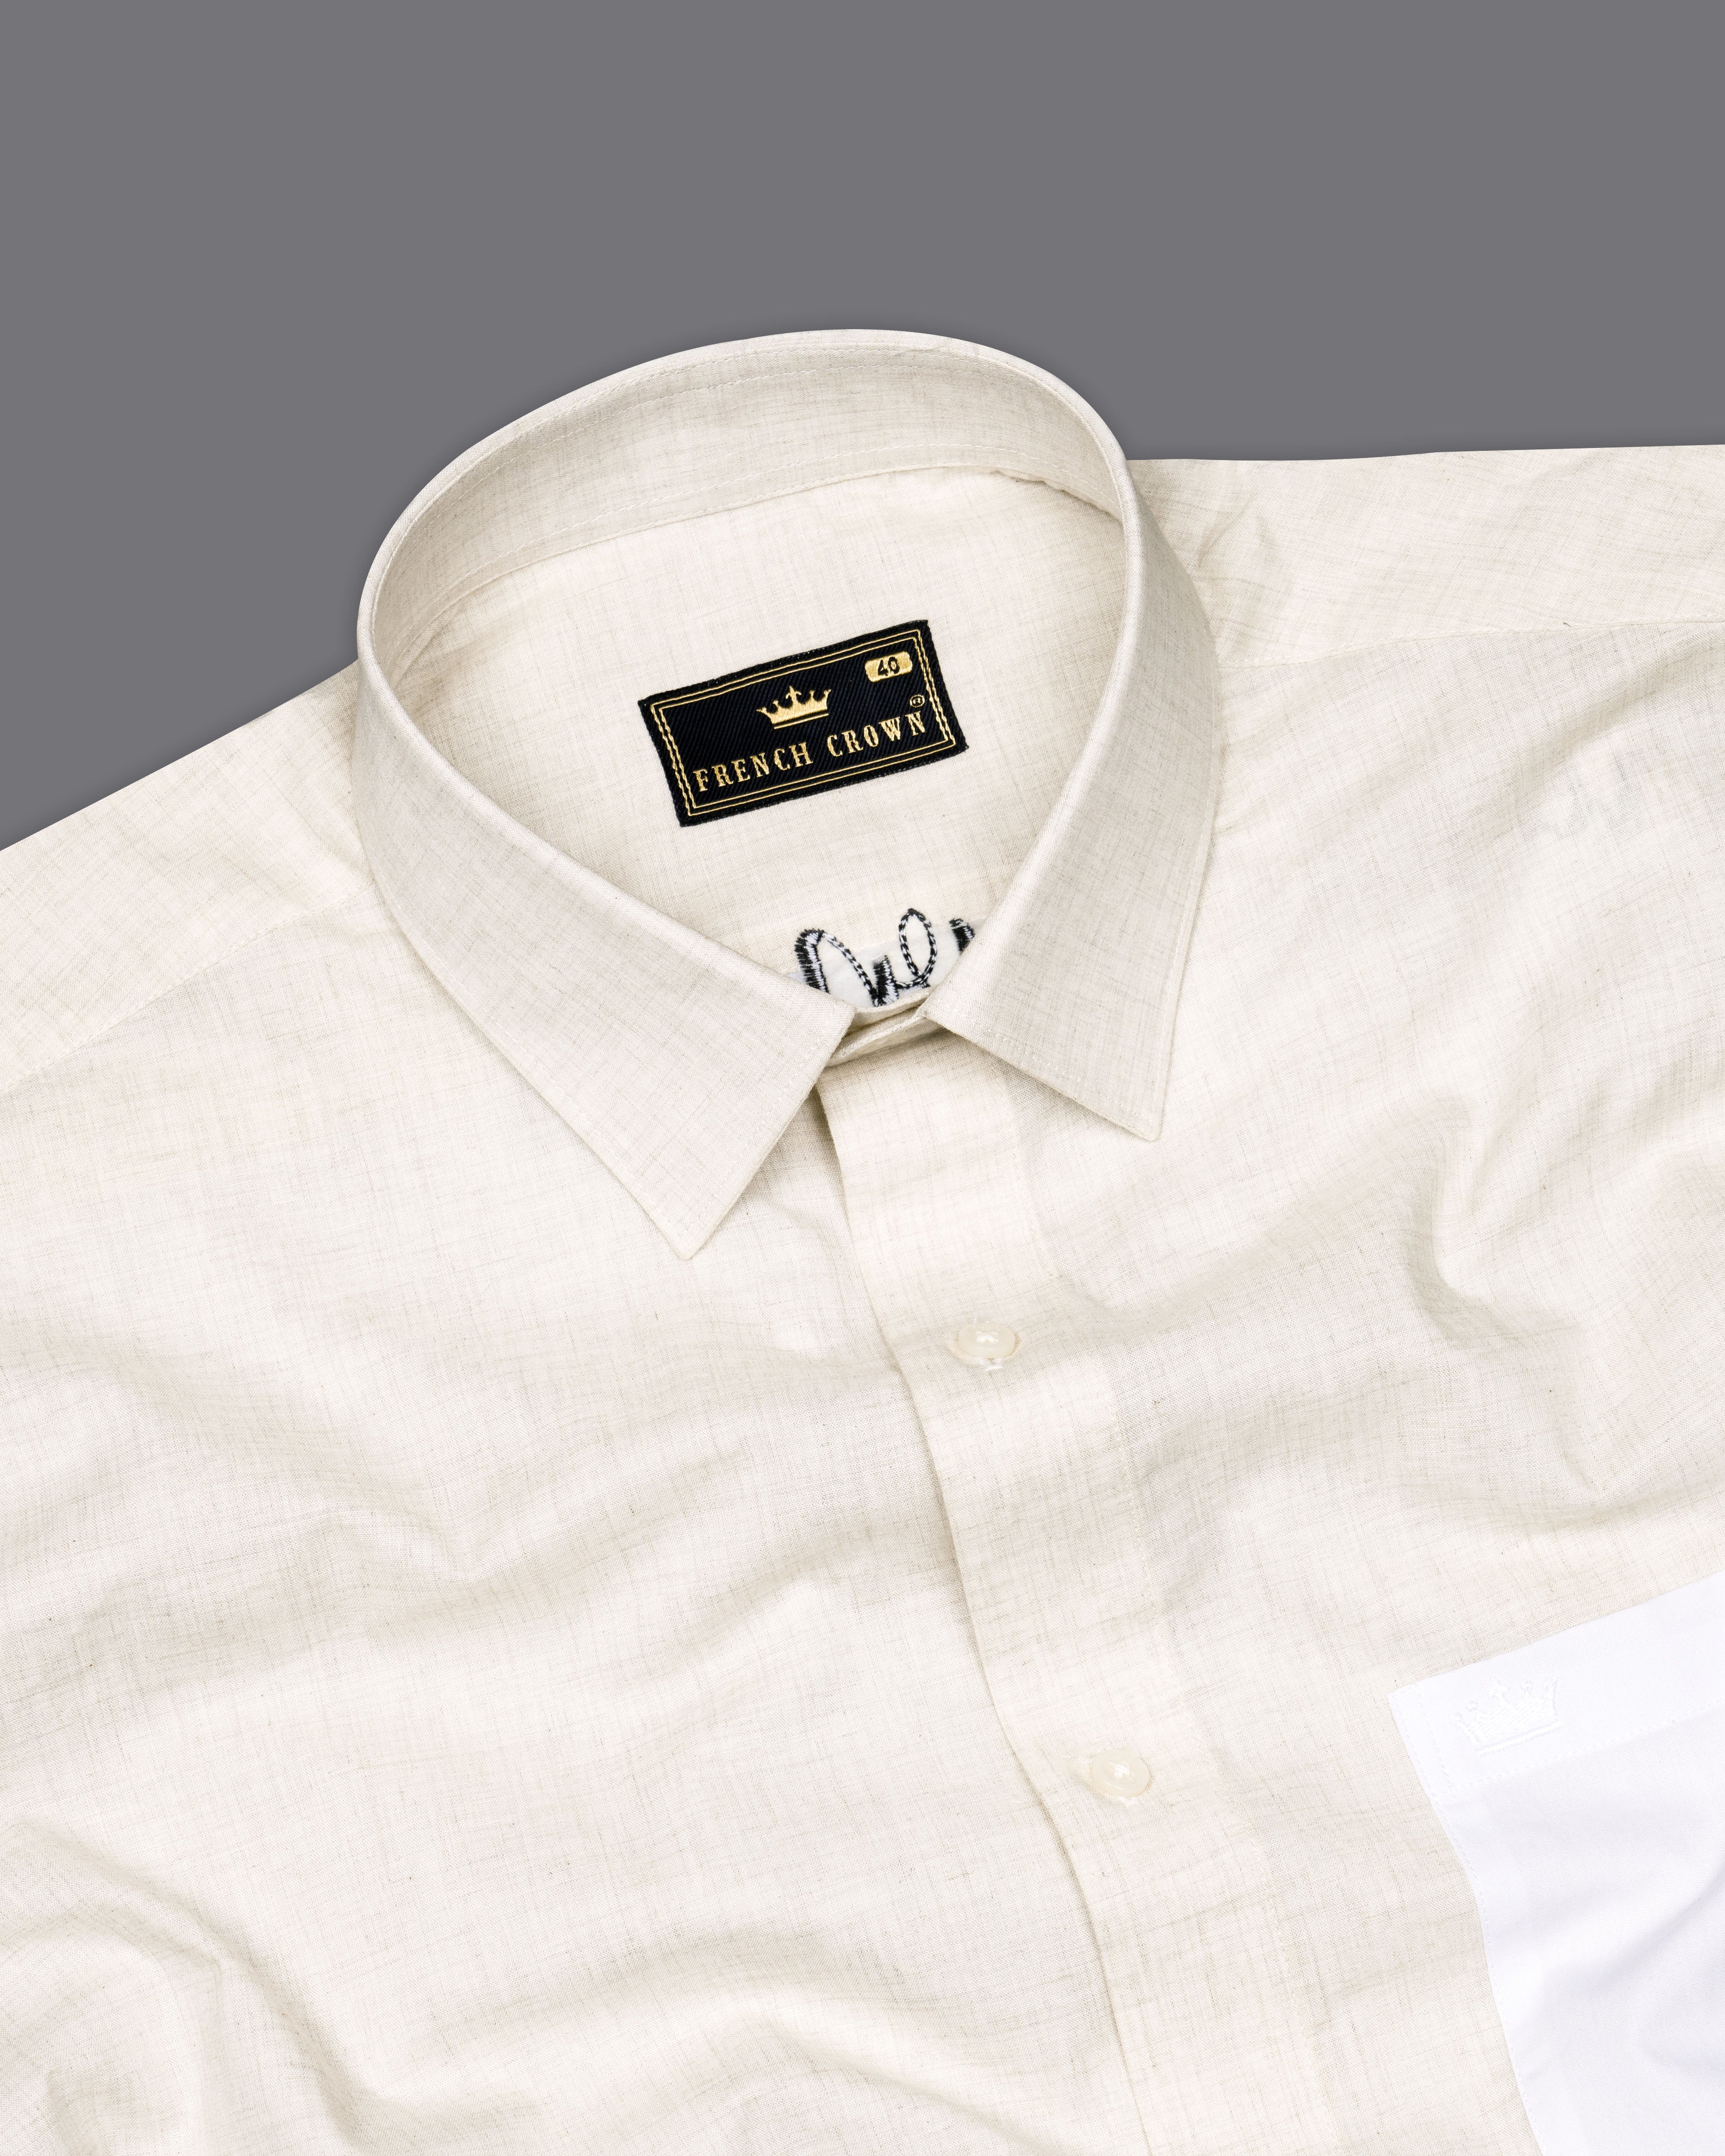 Armour Beige Signature Embroidered with White Patches Premium Cotton Shirt 7566-P310-E067-38, 7566-P310-E067-H-38, 7566-P310-E067-39, 7566-P310-E067-H-39, 7566-P310-E067-40, 7566-P310-E067-H-40, 7566-P310-E067-42, 7566-P310-E067-H-42, 7566-P310-E067-44, 7566-P310-E067-H-44, 7566-P310-E067-46, 7566-P310-E067-H-46, 7566-P310-E067-48, 7566-P310-E067-H-48, 7566-P310-E067-50, 7566-P310-E067-H-50, 7566-P310-E067-52, 7566-P310-E067-H-52